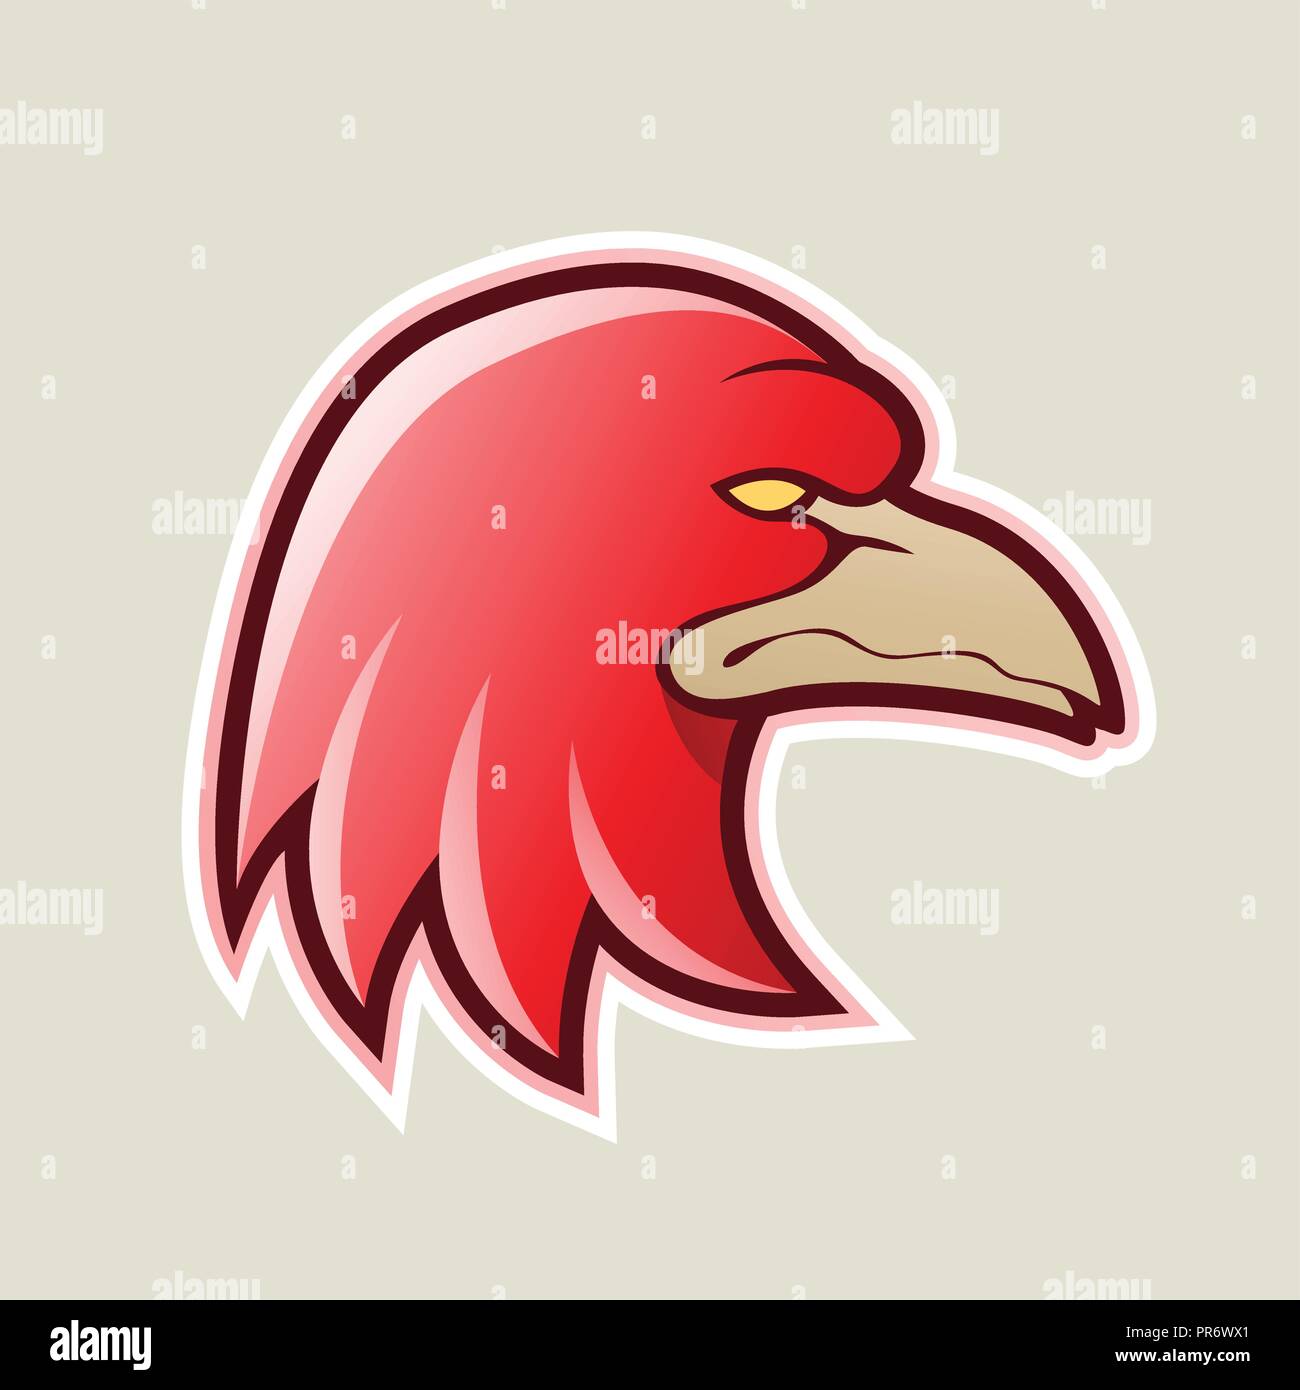 Với biểu tượng đầu chim Ưng đại bàng đỏ trên nền trắng trông thật đầy mạnh mẽ và tinh tế. Đây là biểu tượng không thể thiếu trong bảng thiết kế của bất kỳ người nào yêu thích sự sang trọng và tiên tiến.